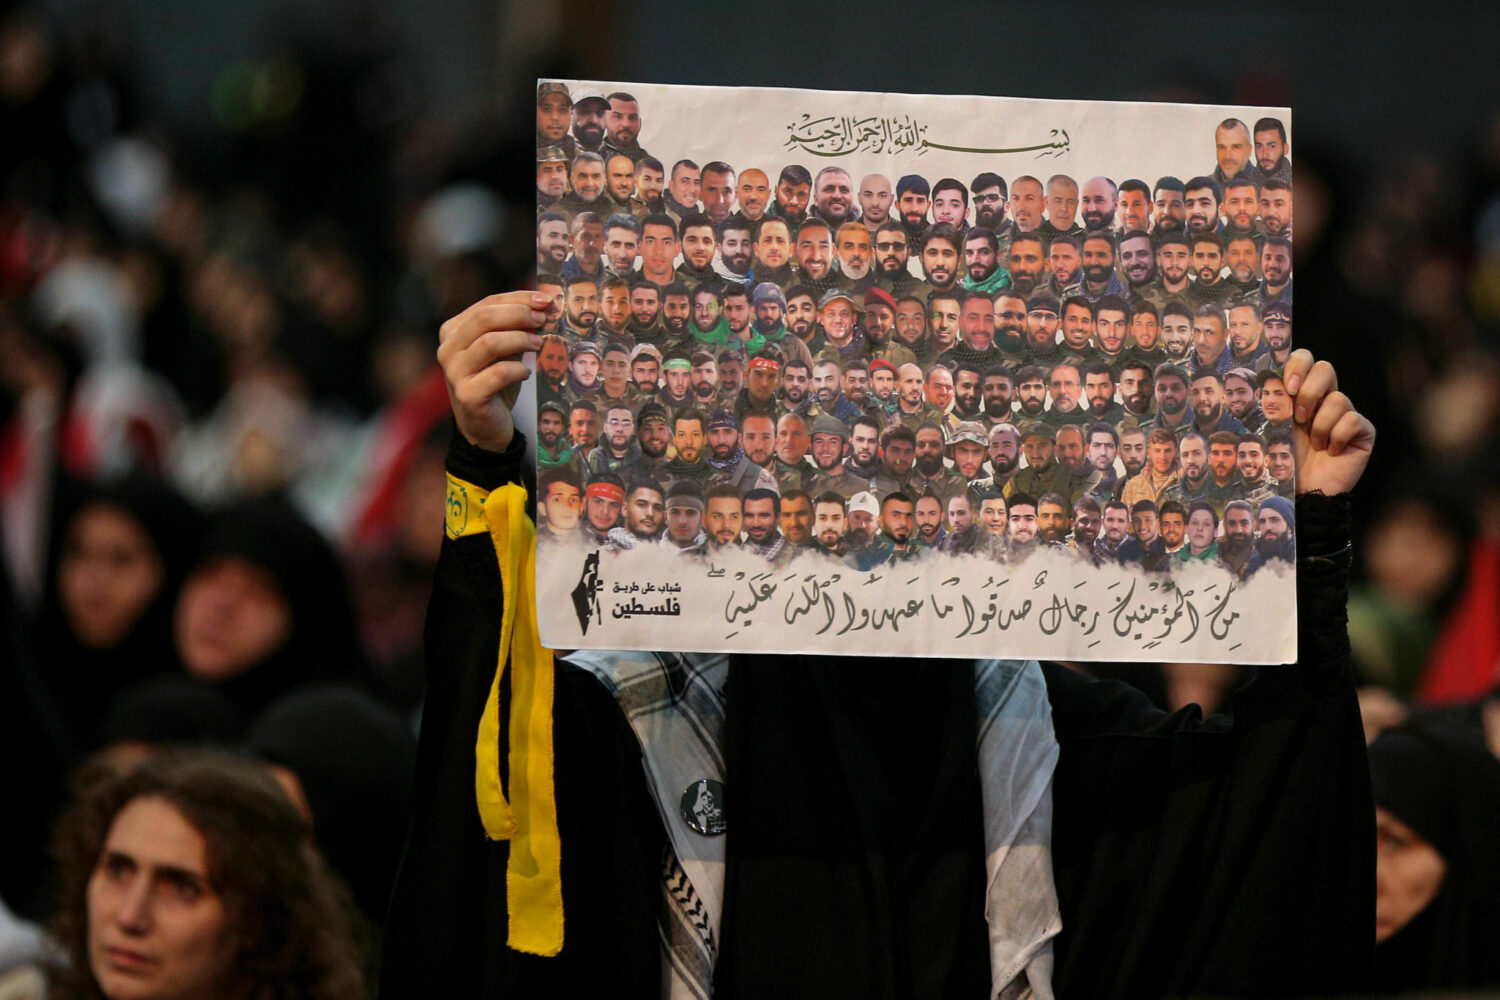 حزب الله يُقاتل كجيش نظامي أين المقاومة؟ (1)